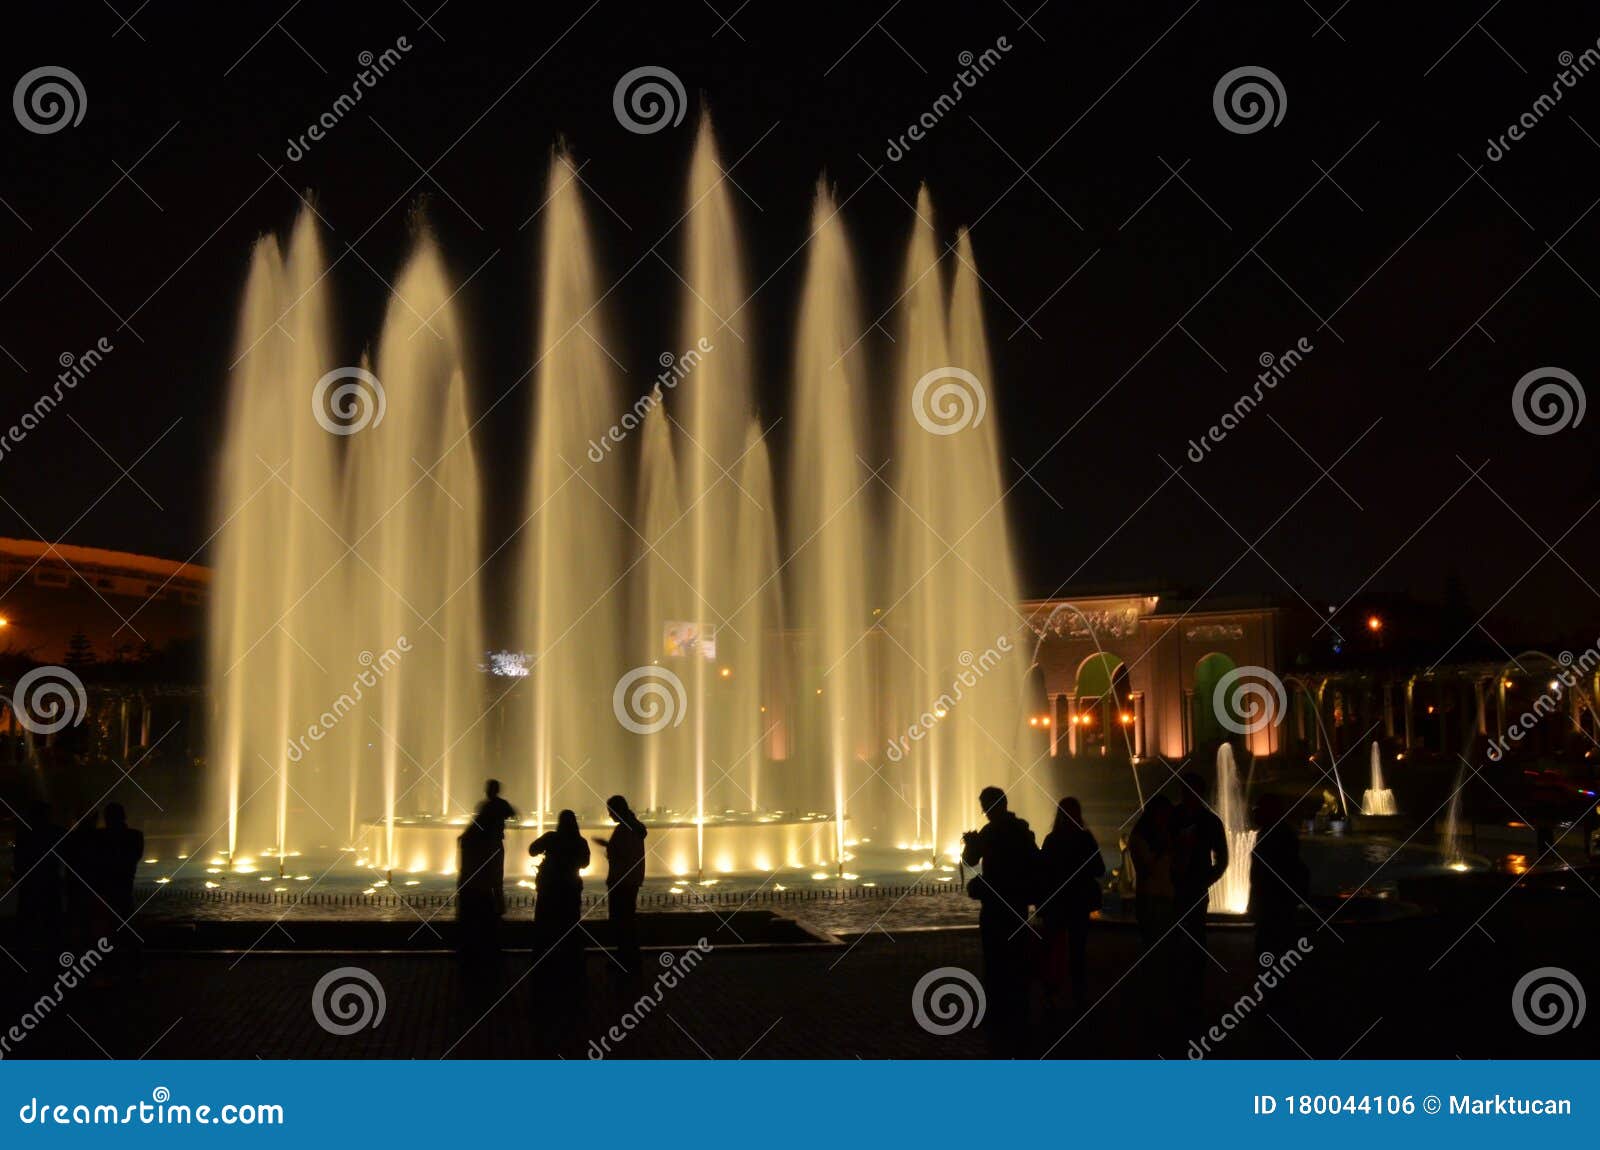 illuminated water fountains in the circuito magico de agua. lima peru